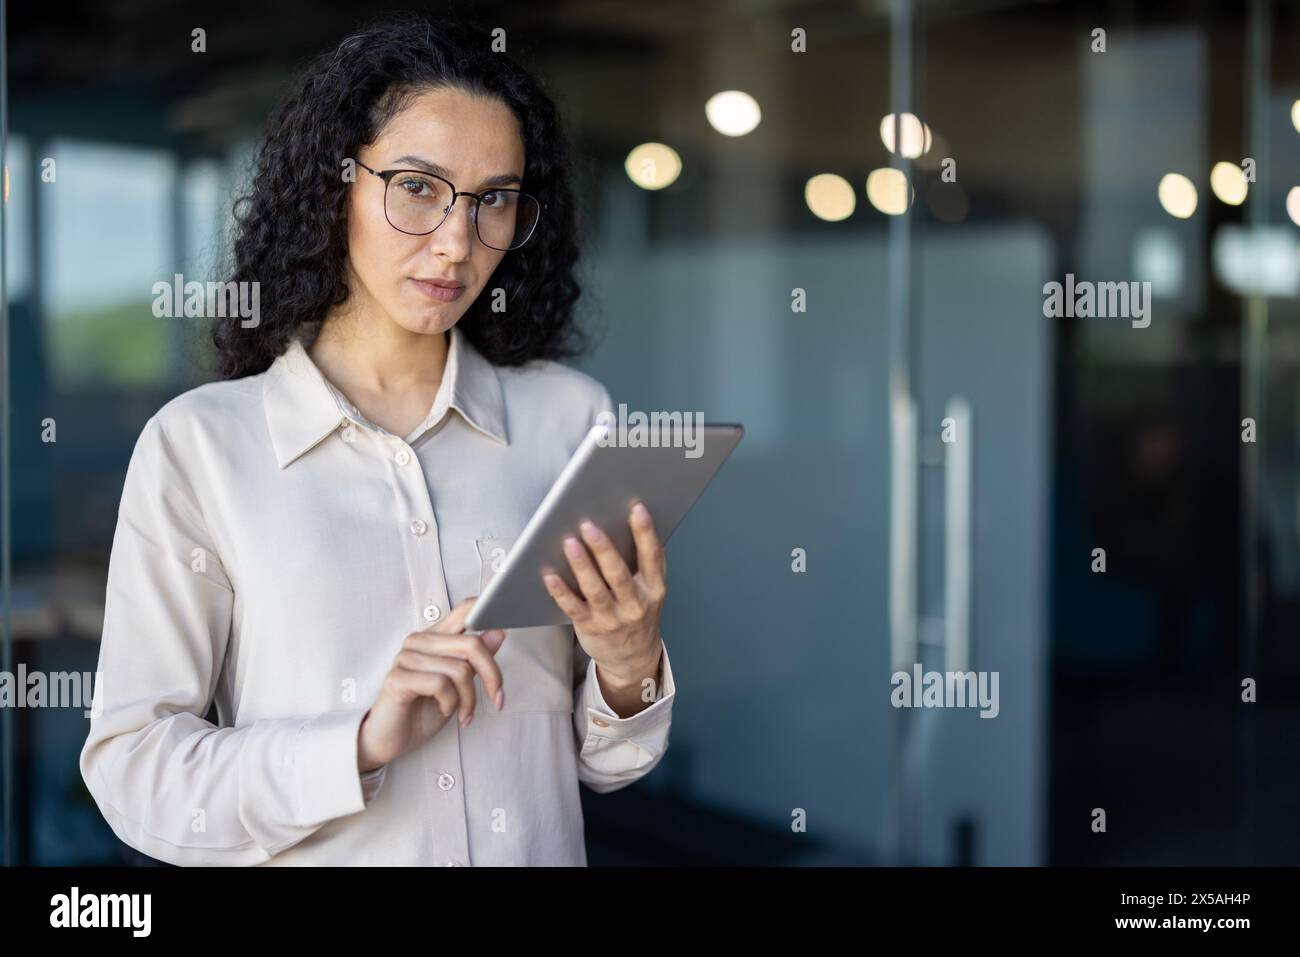 Eine hispanische Geschäftsfrau in einer hellen Bluse verwendet in einer Büroumgebung ein digitales Tablet, um möglicherweise Daten zu überprüfen oder Aufgaben zu verwalten. Stockfoto